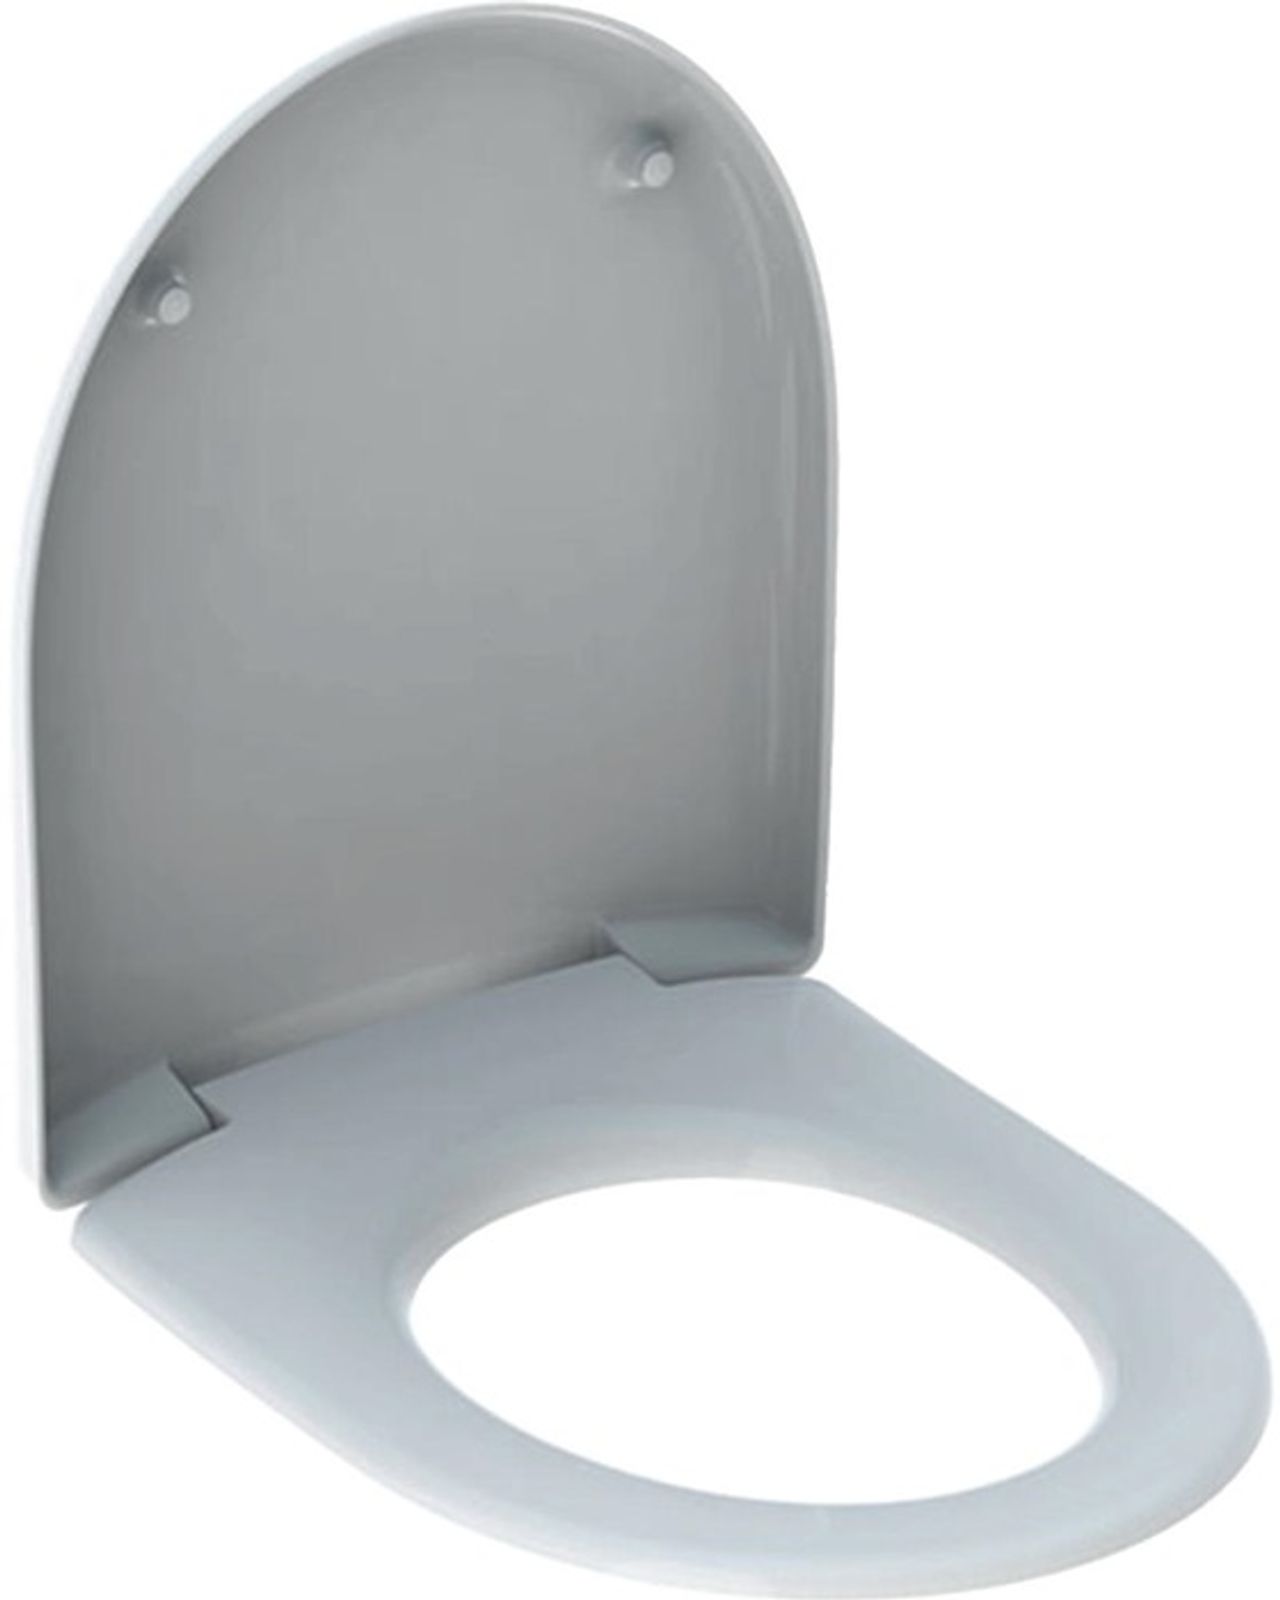 Geberit Renova WC-Sitz, Befestigung von antibakteriell, weiß